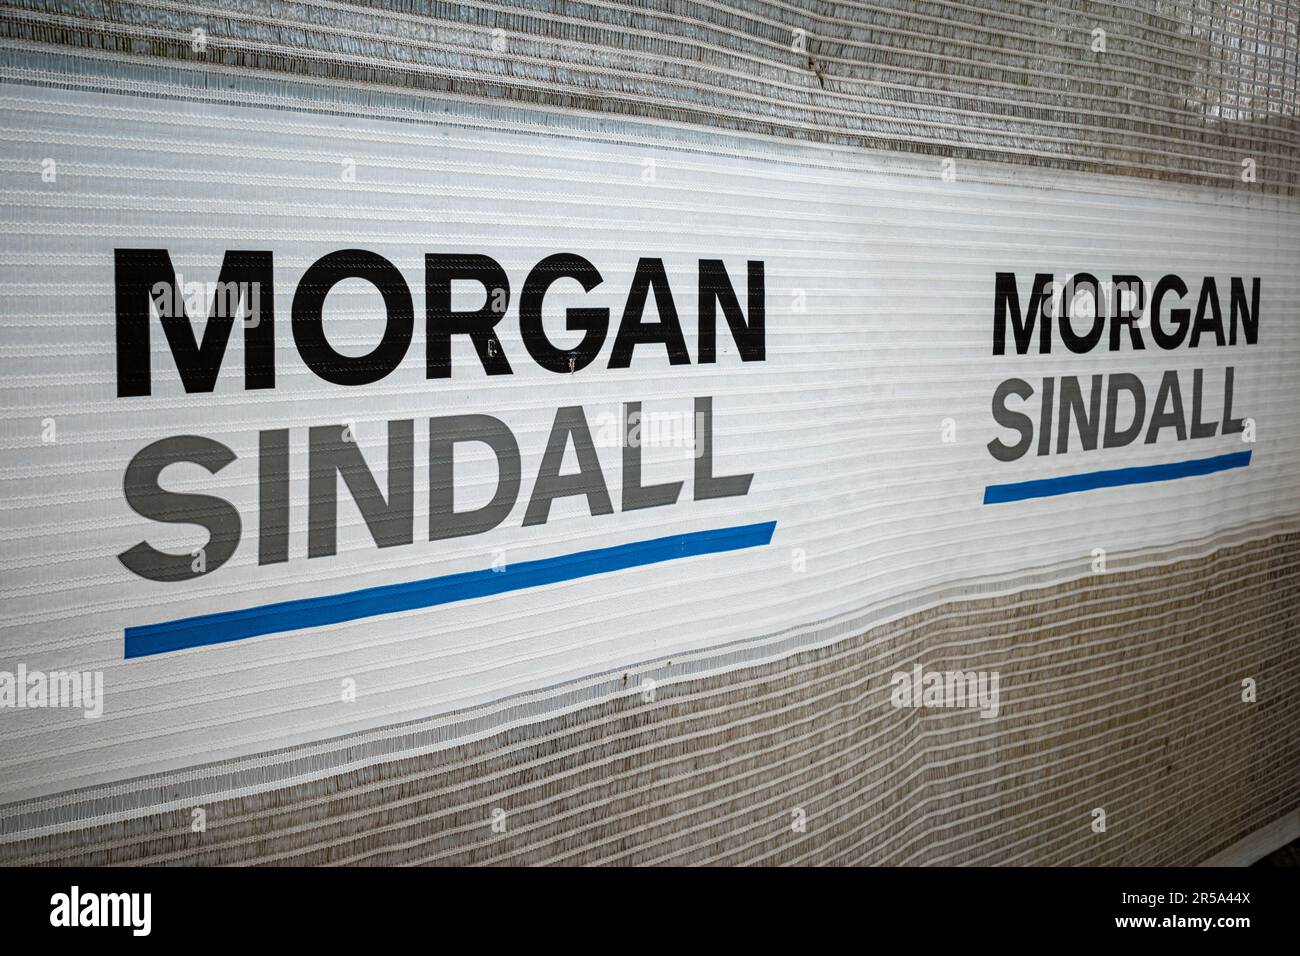 Morgan Sindall Building Site Old Street Roundabout Shoreditch London. Morgan Sindall Group plc ist ein britisches Bauunternehmen, das 1977 gegründet wurde. Stockfoto